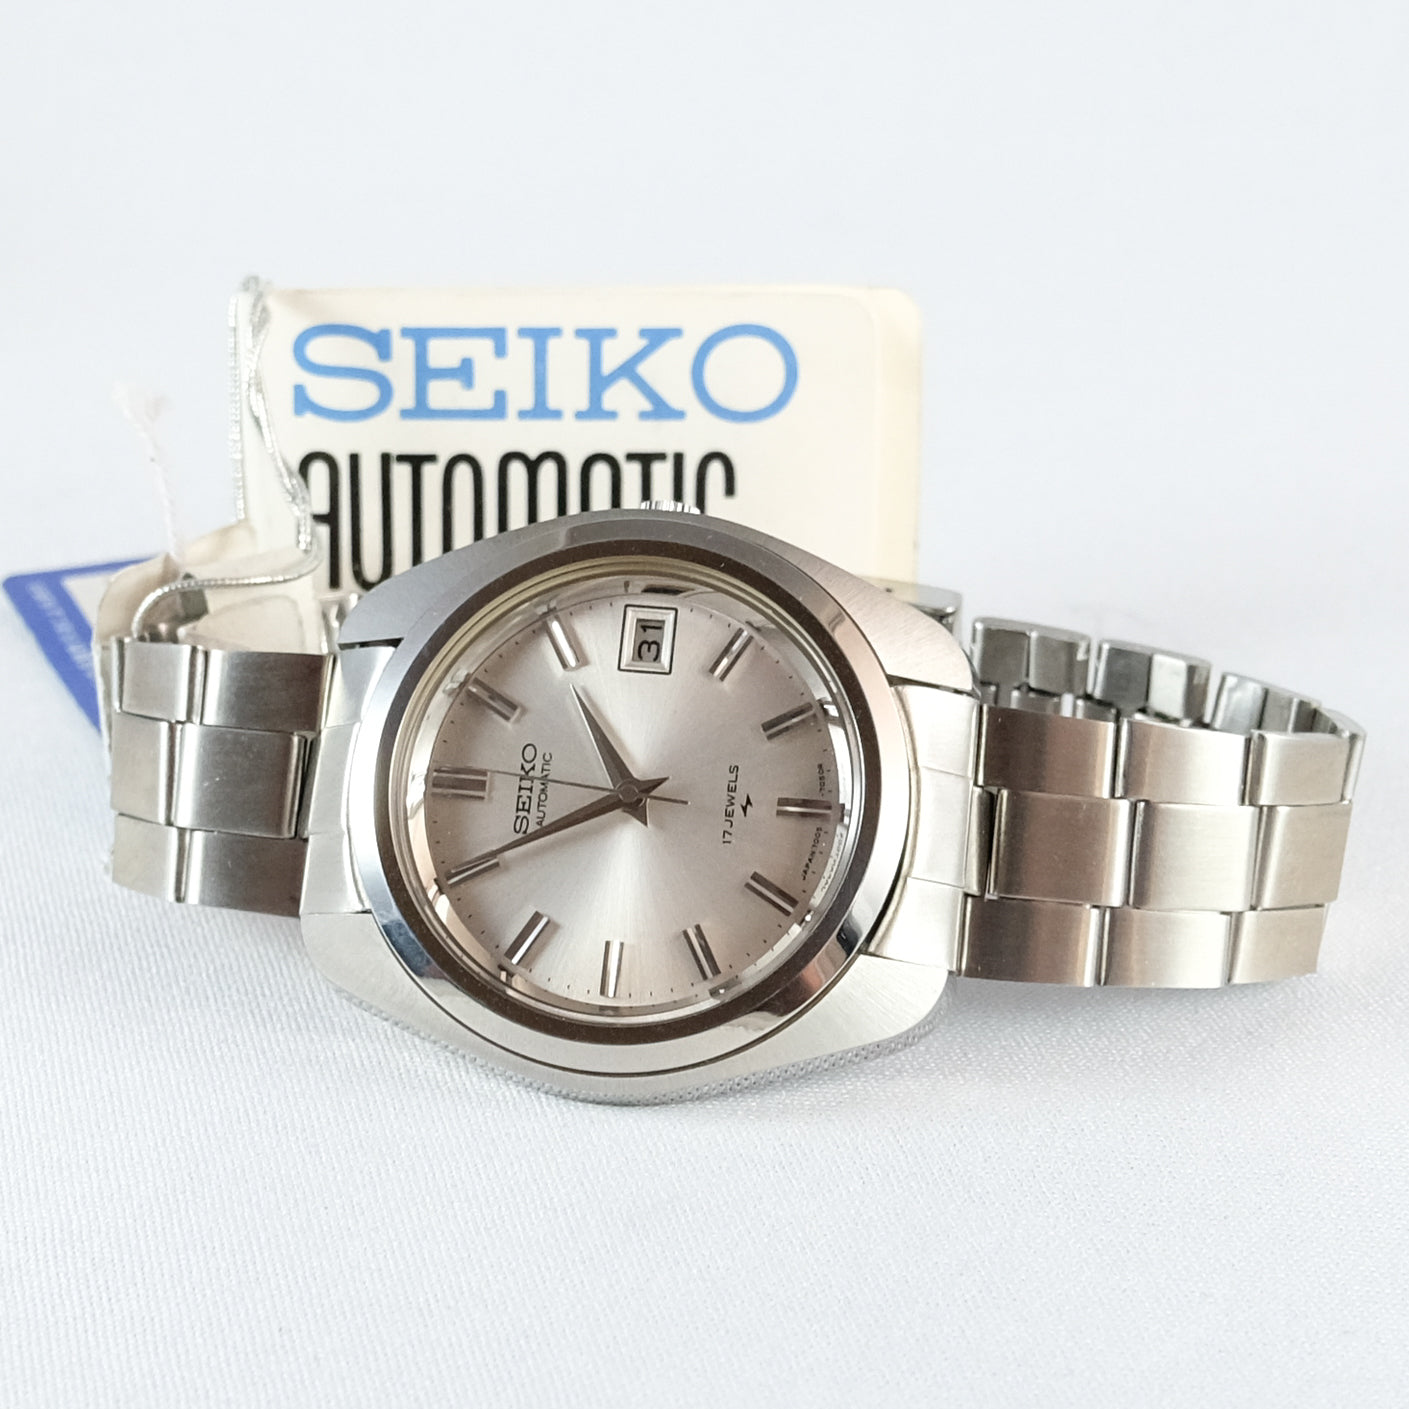 1973 NOS Seiko Automatic 7005-7031